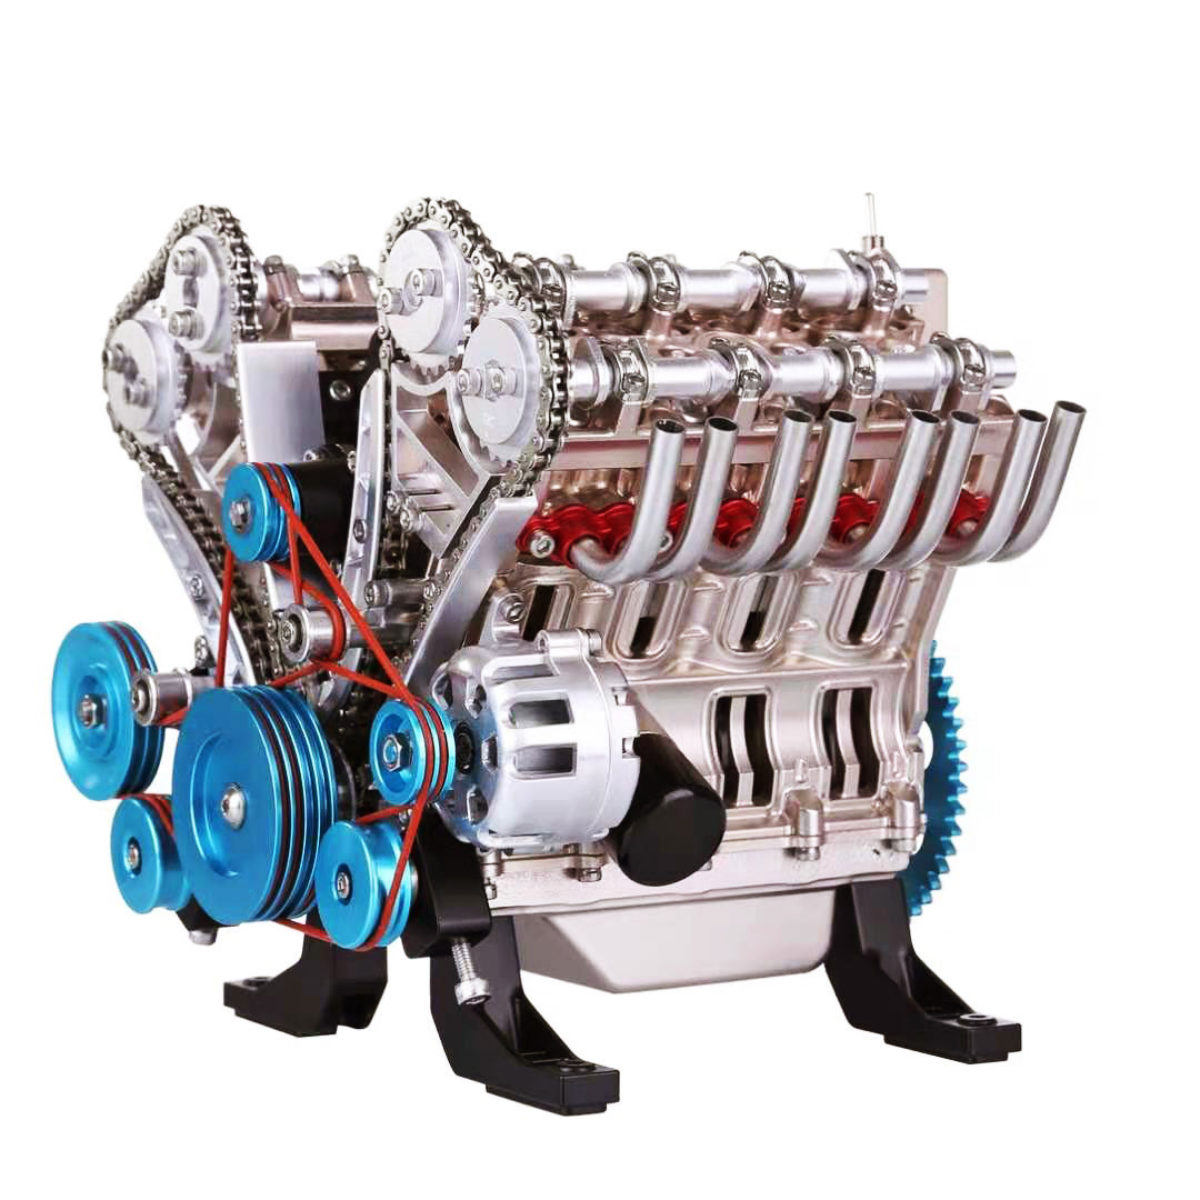 Mini moteur 6 cylindres à ouverture horizontale, modèle 911, à